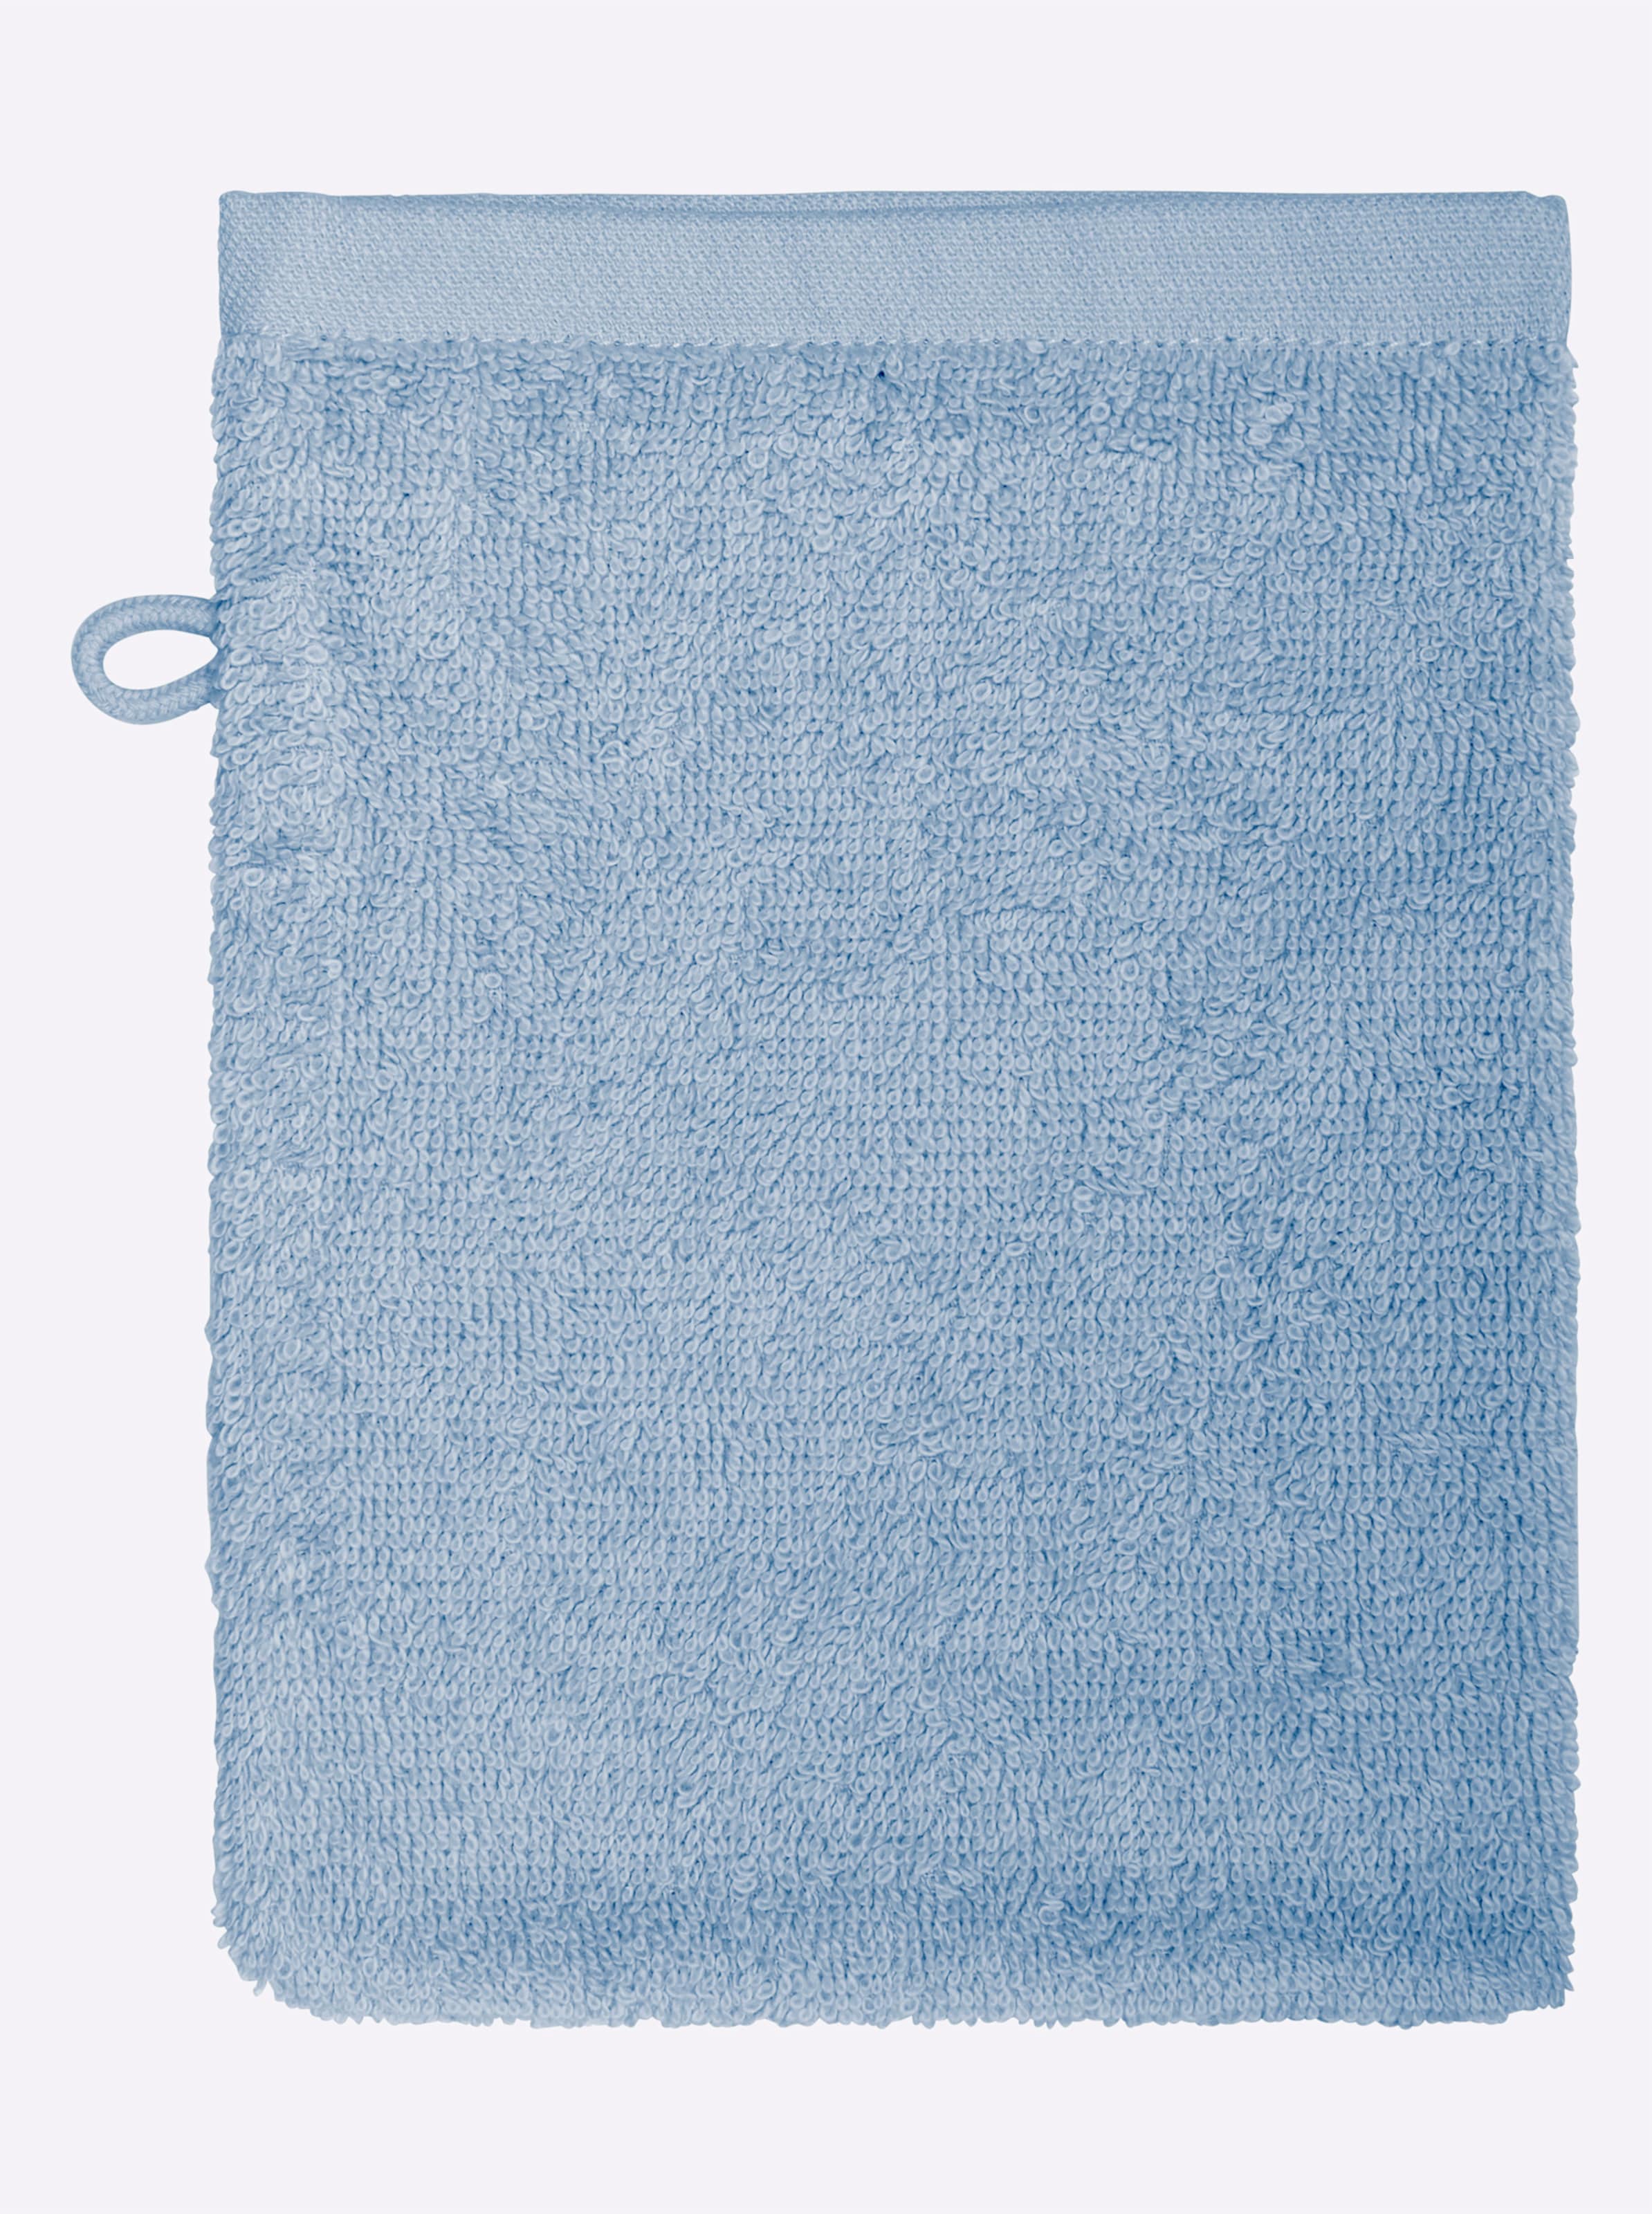 Hell Blau günstig Kaufen-Handtuch in hellblau von wäschepur. Handtuch in hellblau von wäschepur <![CDATA[Eine liebevoll gestaltete Stickbordüre mit Vögeln und Zweigen ziert dieses wunderbar weiche Handtuch-Programm. Walkfrottier in angenehmer Luxus-Qualität. Waschlap